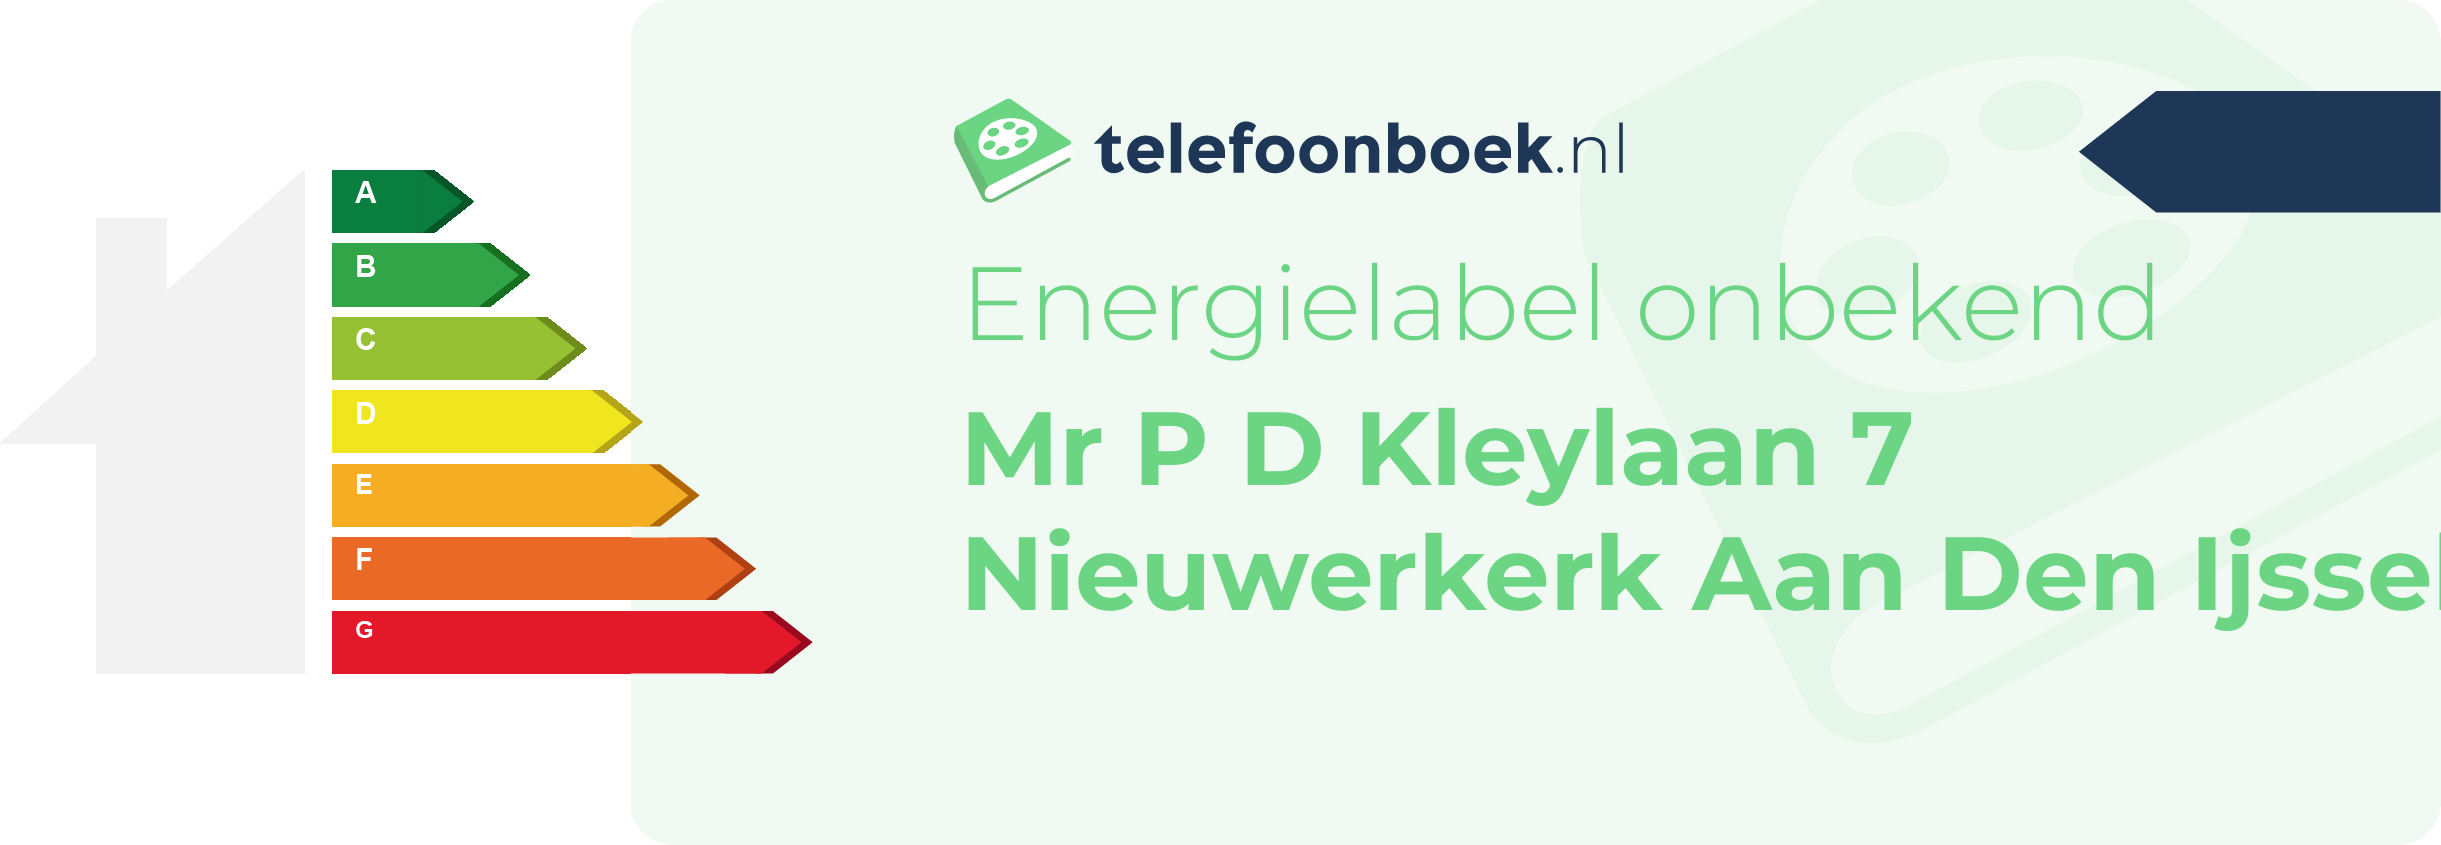 Energielabel Mr P D Kleylaan 7 Nieuwerkerk Aan Den Ijssel